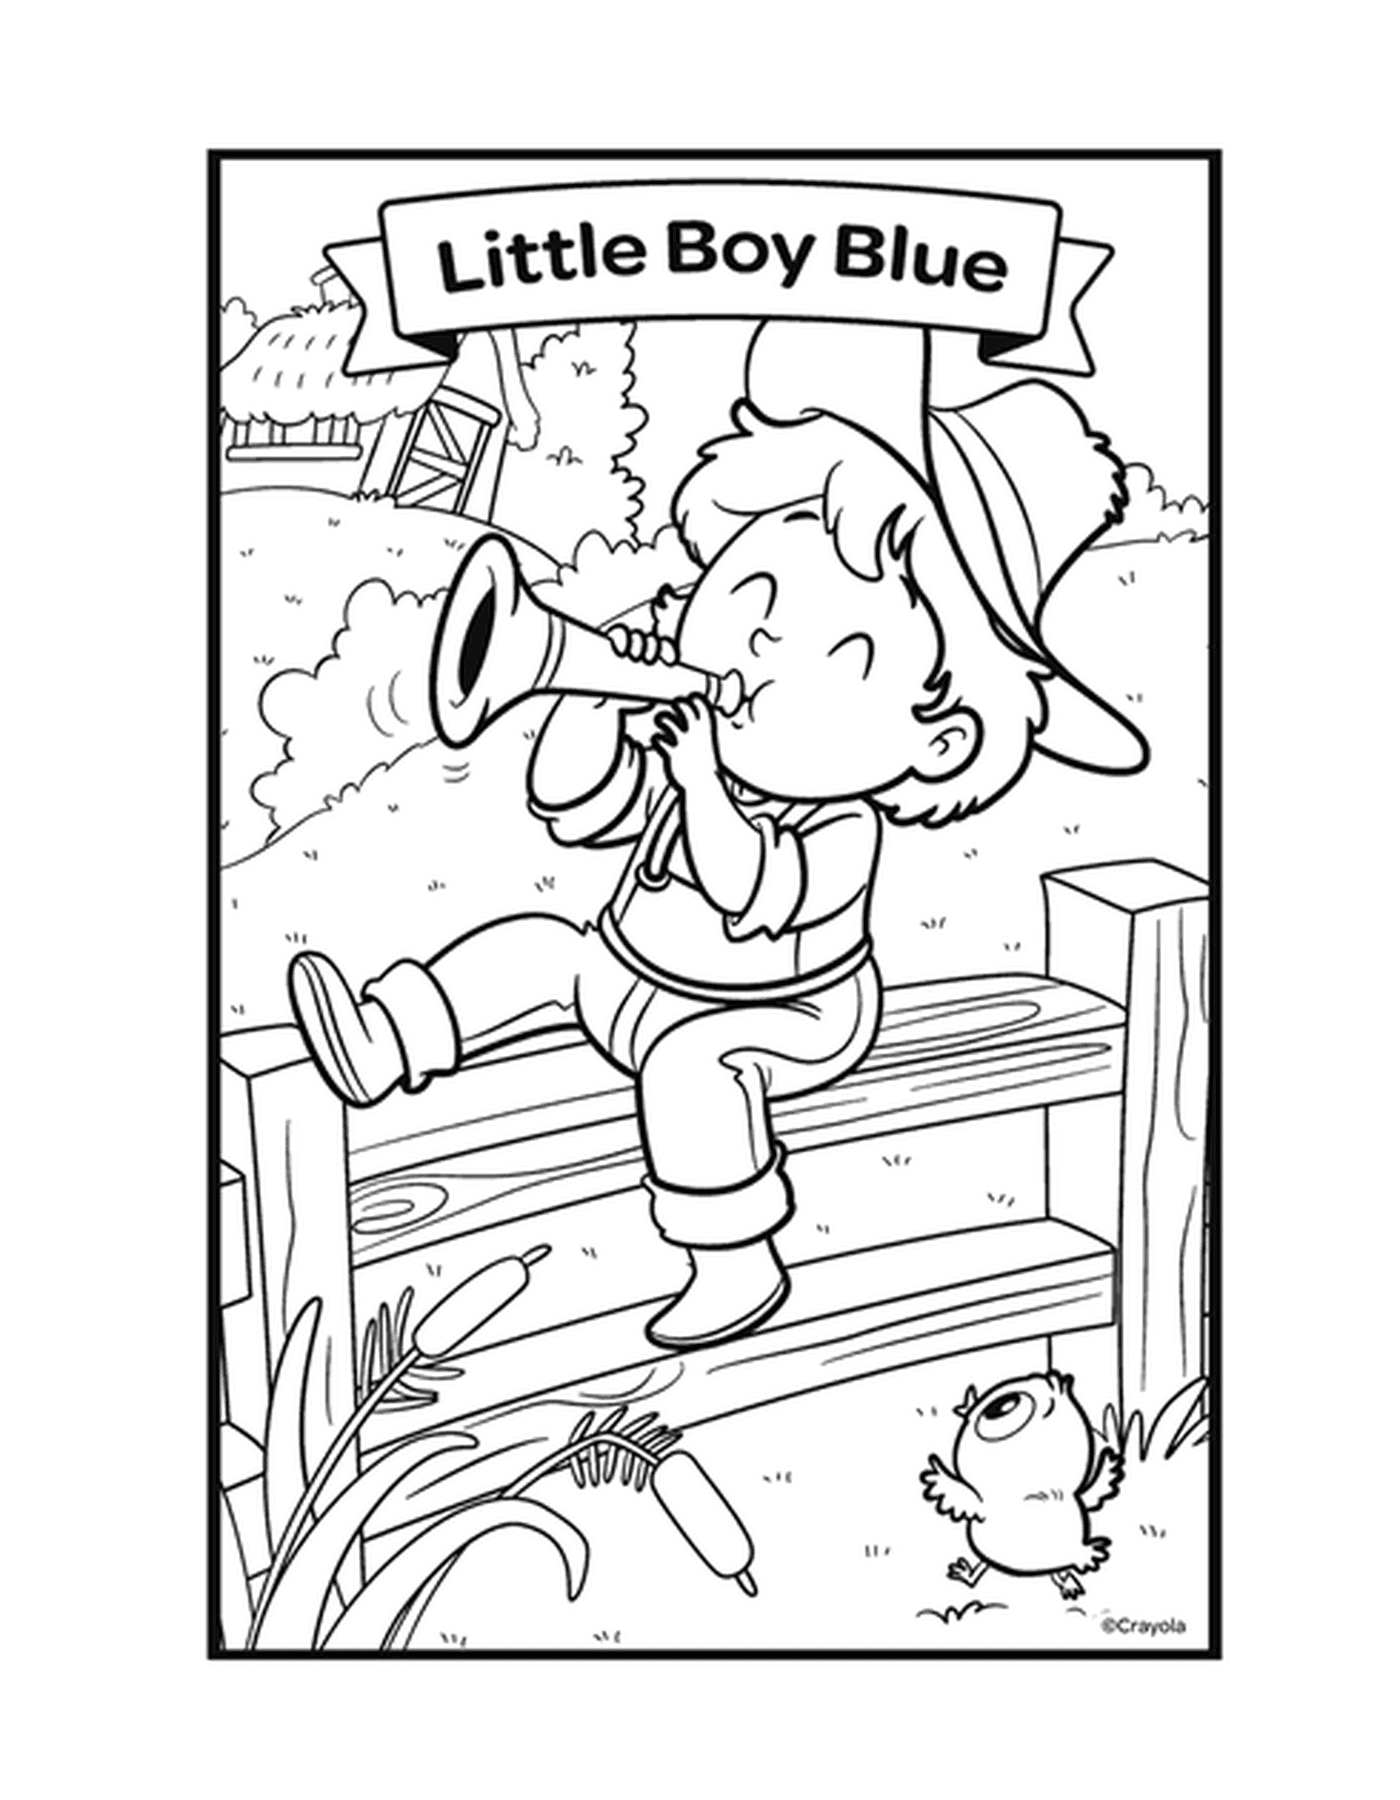   La comptine Le petit garçon bleu avec un garçon jouant de la trompette sur un banc 